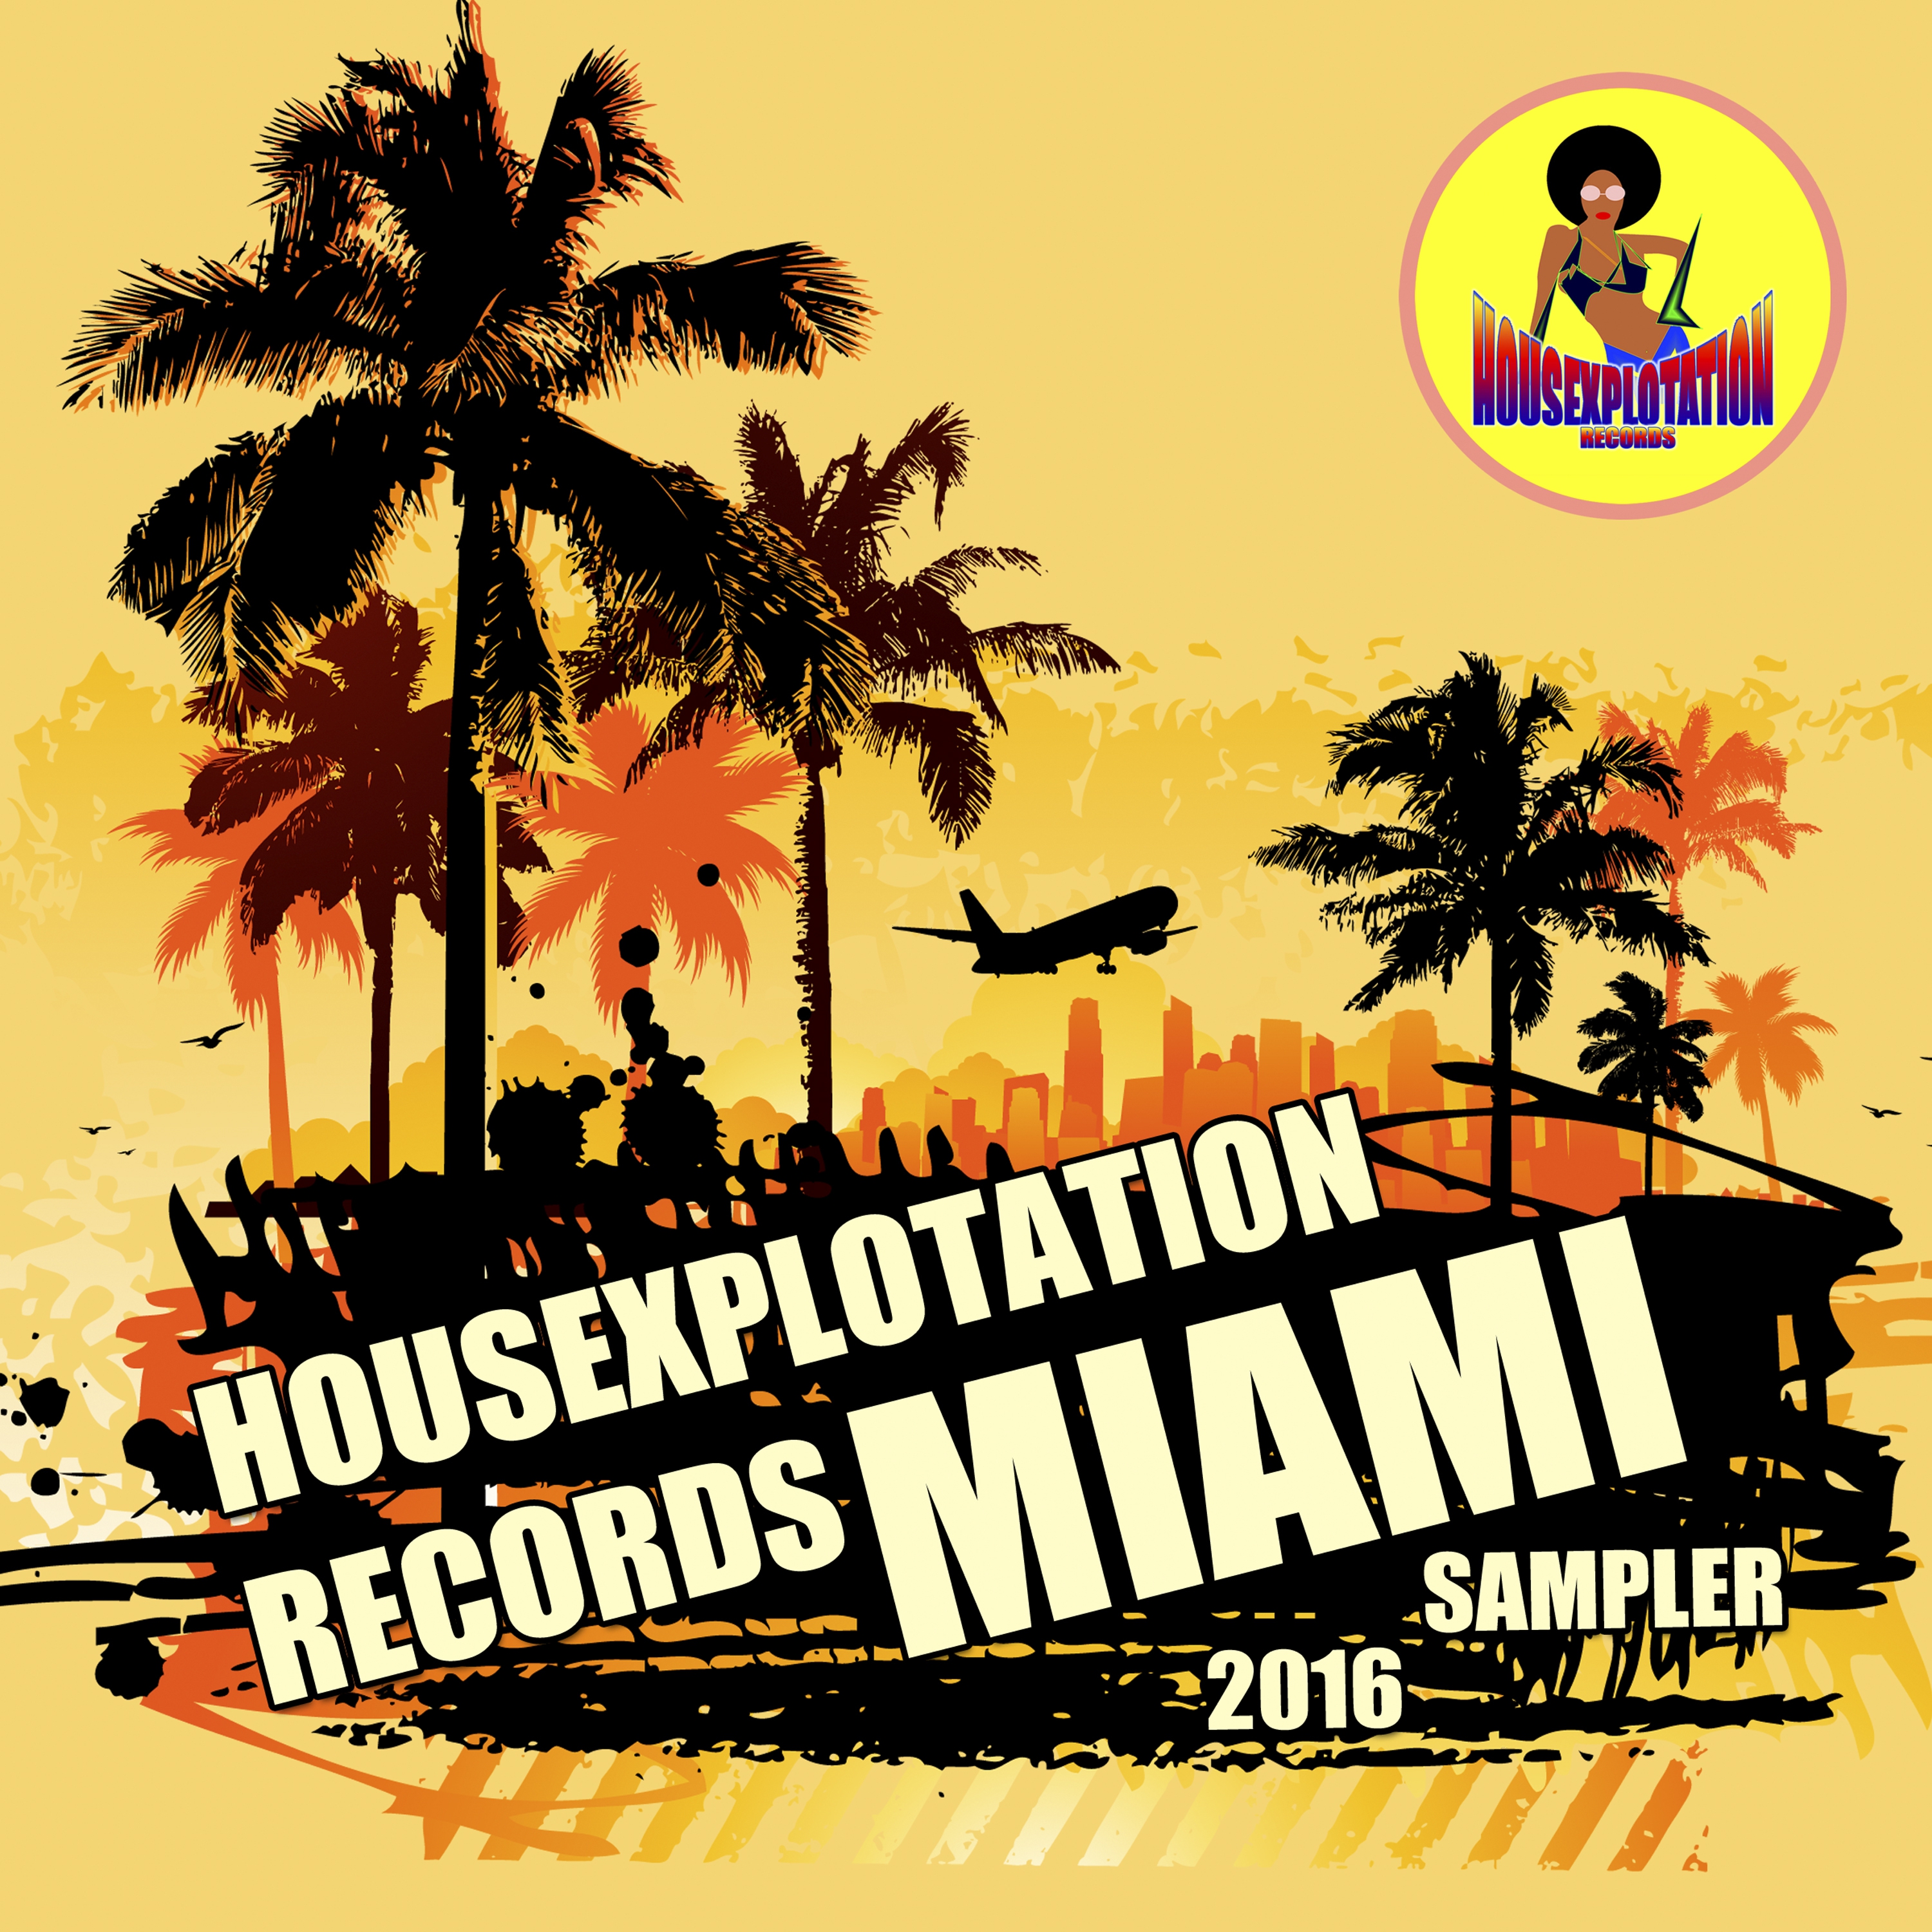 *************** Records Miami Sampler 2016